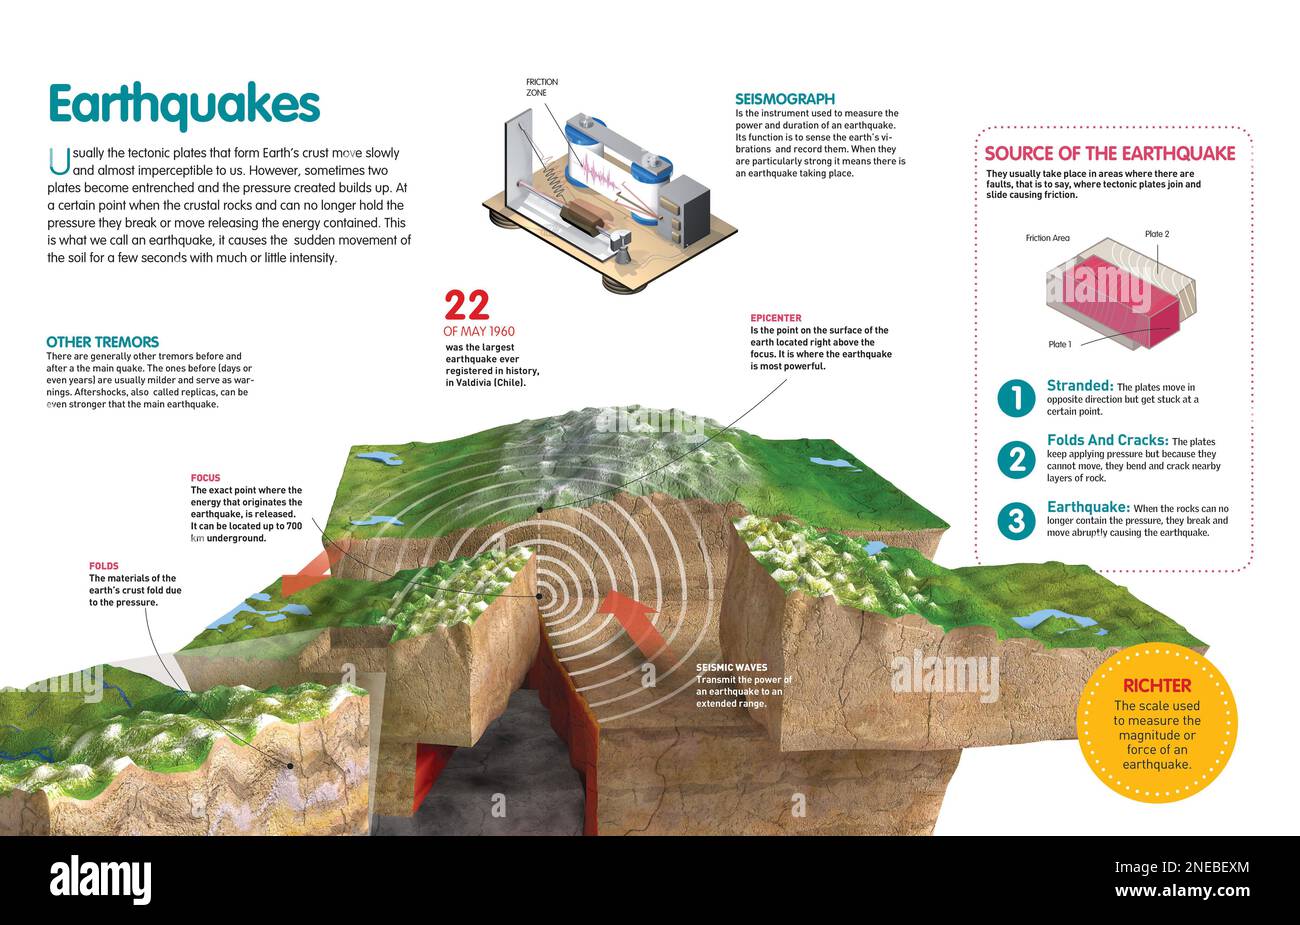 Infografik zu den Erdbeben, ihrer Entstehung und ihrer Messung. [QuarkXPress (.qxp); Adobe InDesign (.indd); 4960x3188]. Stockfoto